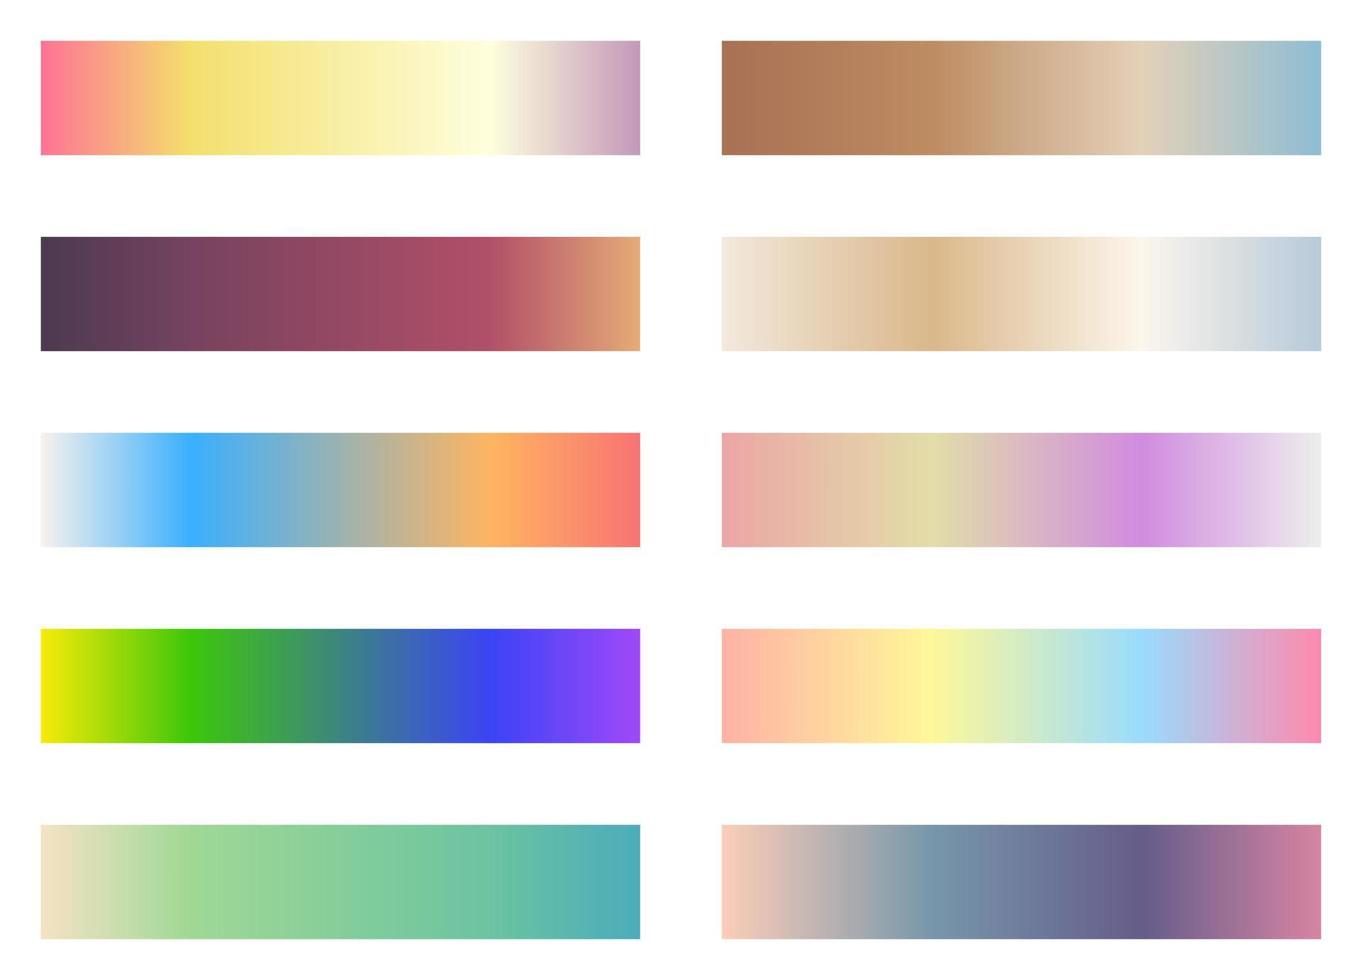 palette de couleurs moderne. couleurs populaires. Charte de couleurs. vecteur eps 10. échantillons de couleurs futuristes dégradés.